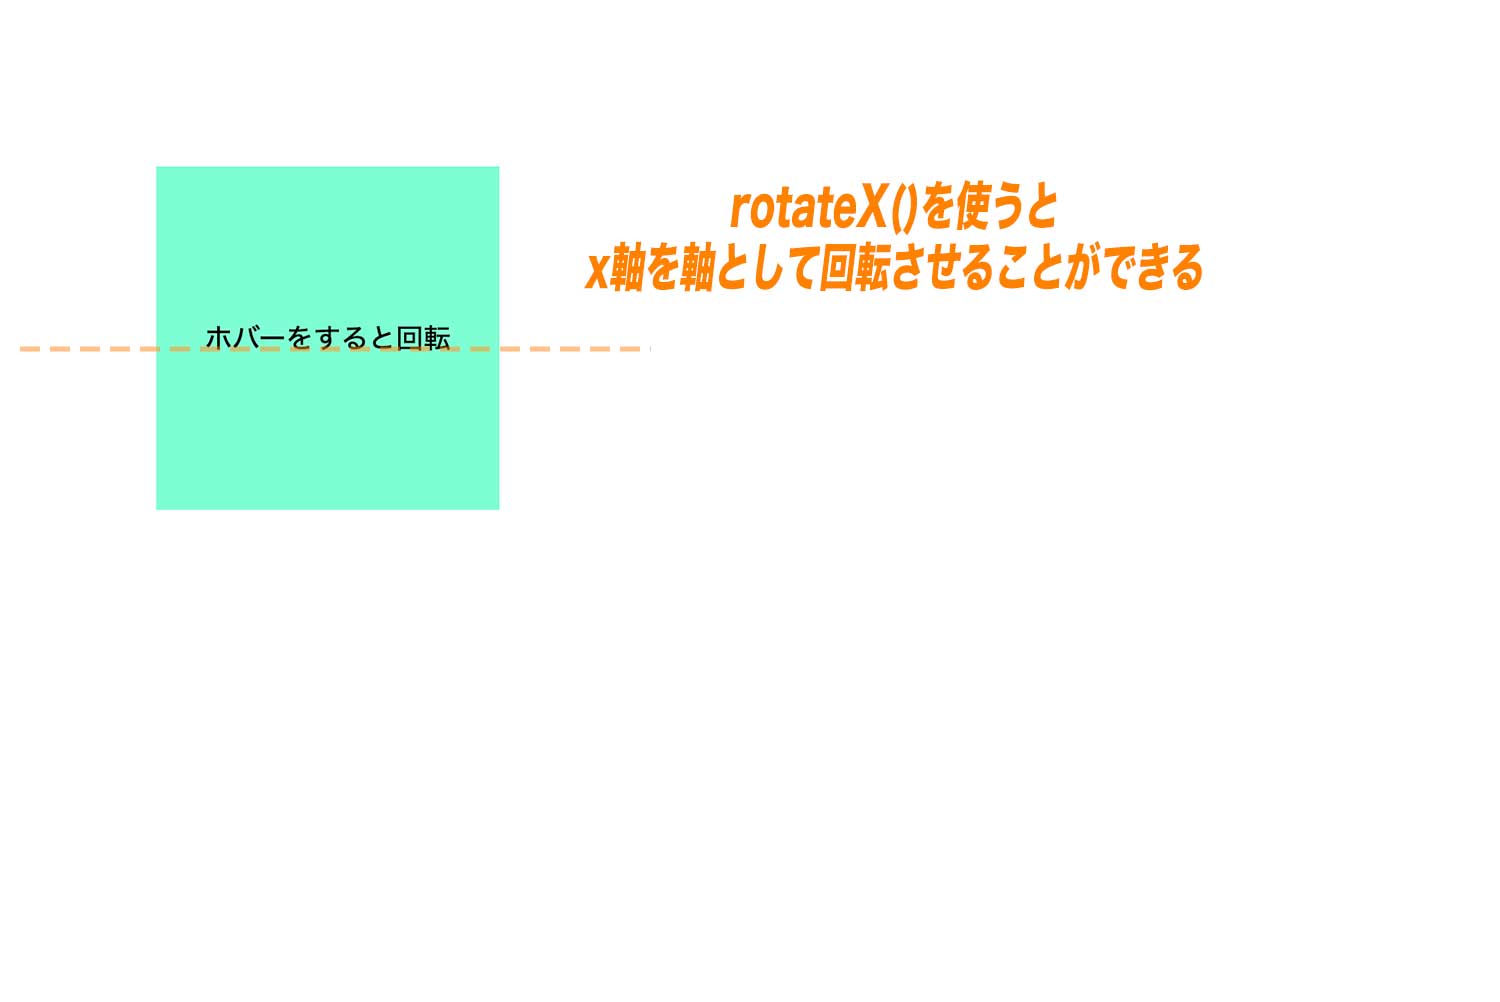 rotateX()では、x軸を軸に要素を回転する